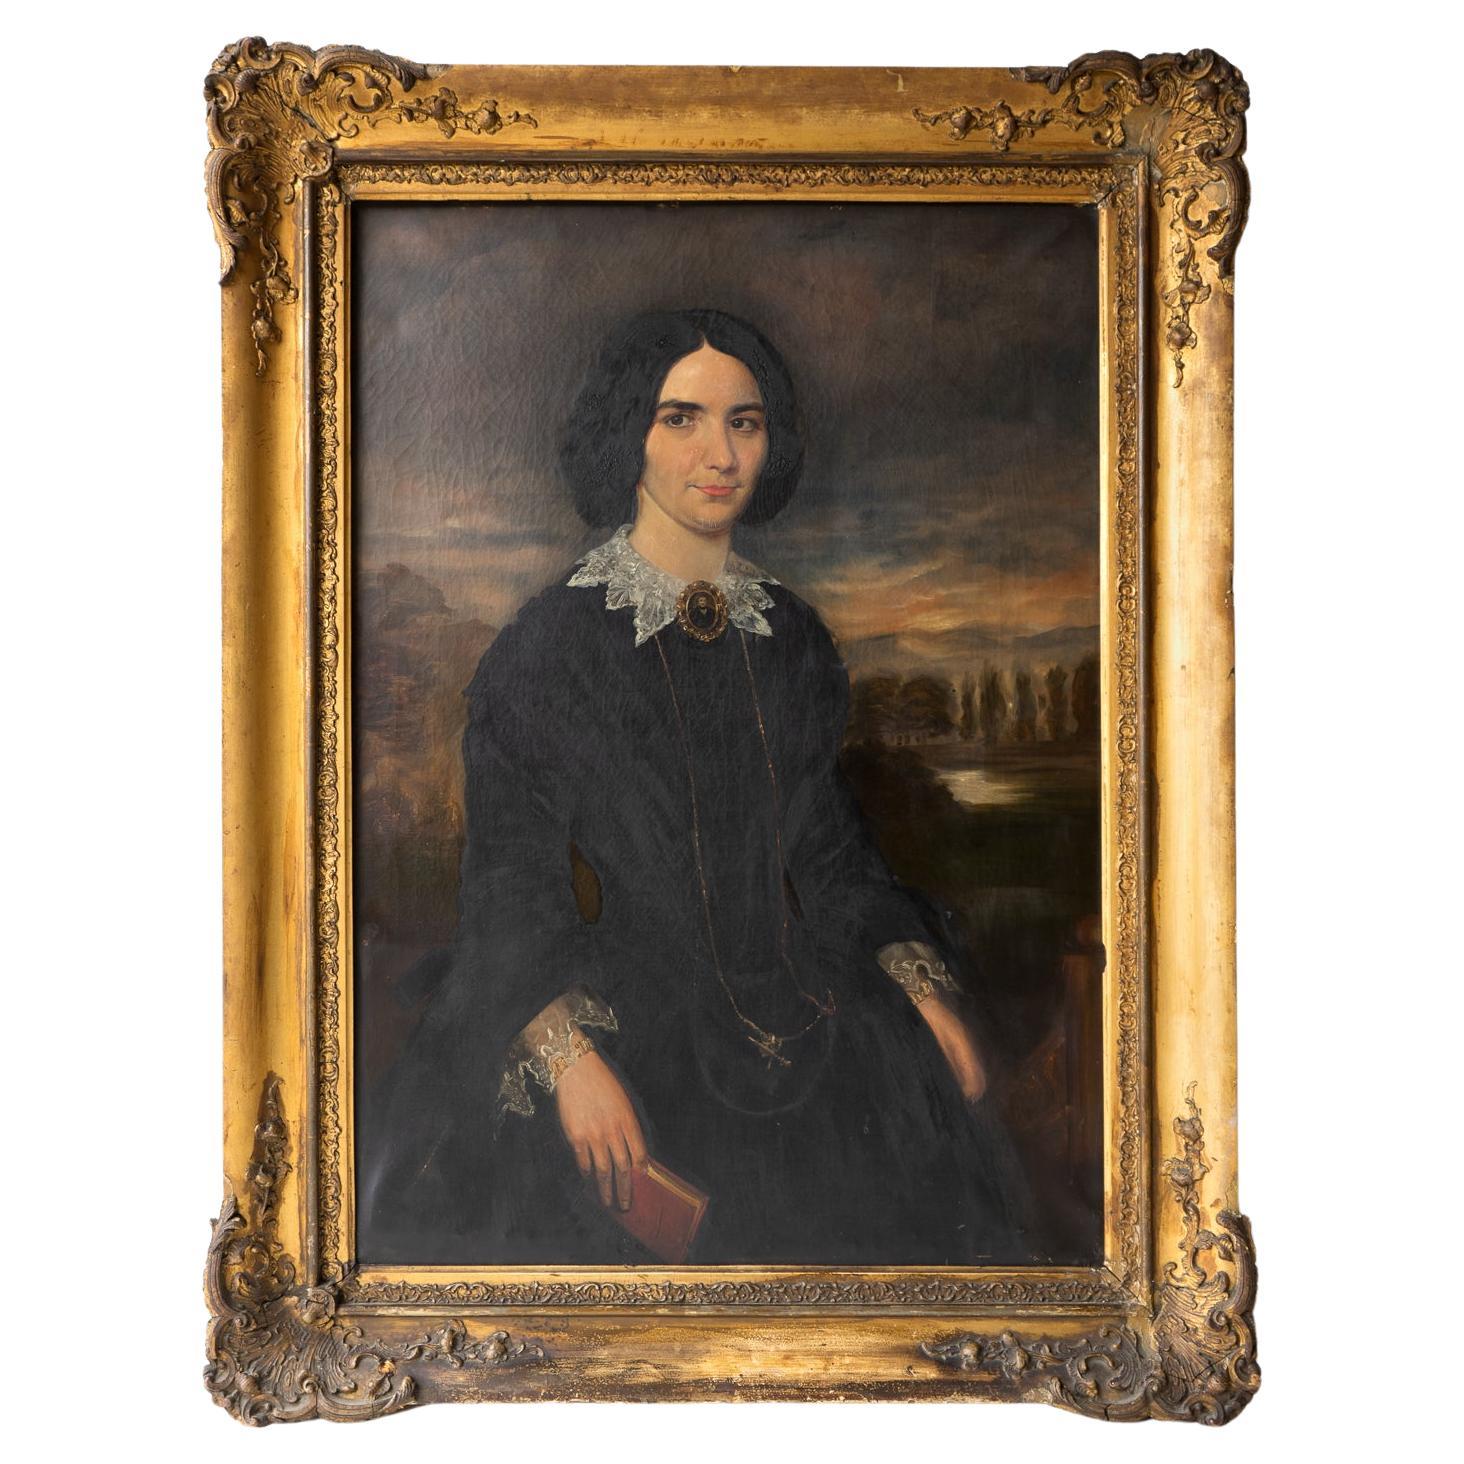 Großes viktorianisches Porträt einer Frau aus dem Westen in einer dramatischen Landschaft, 19. Jahrhundert